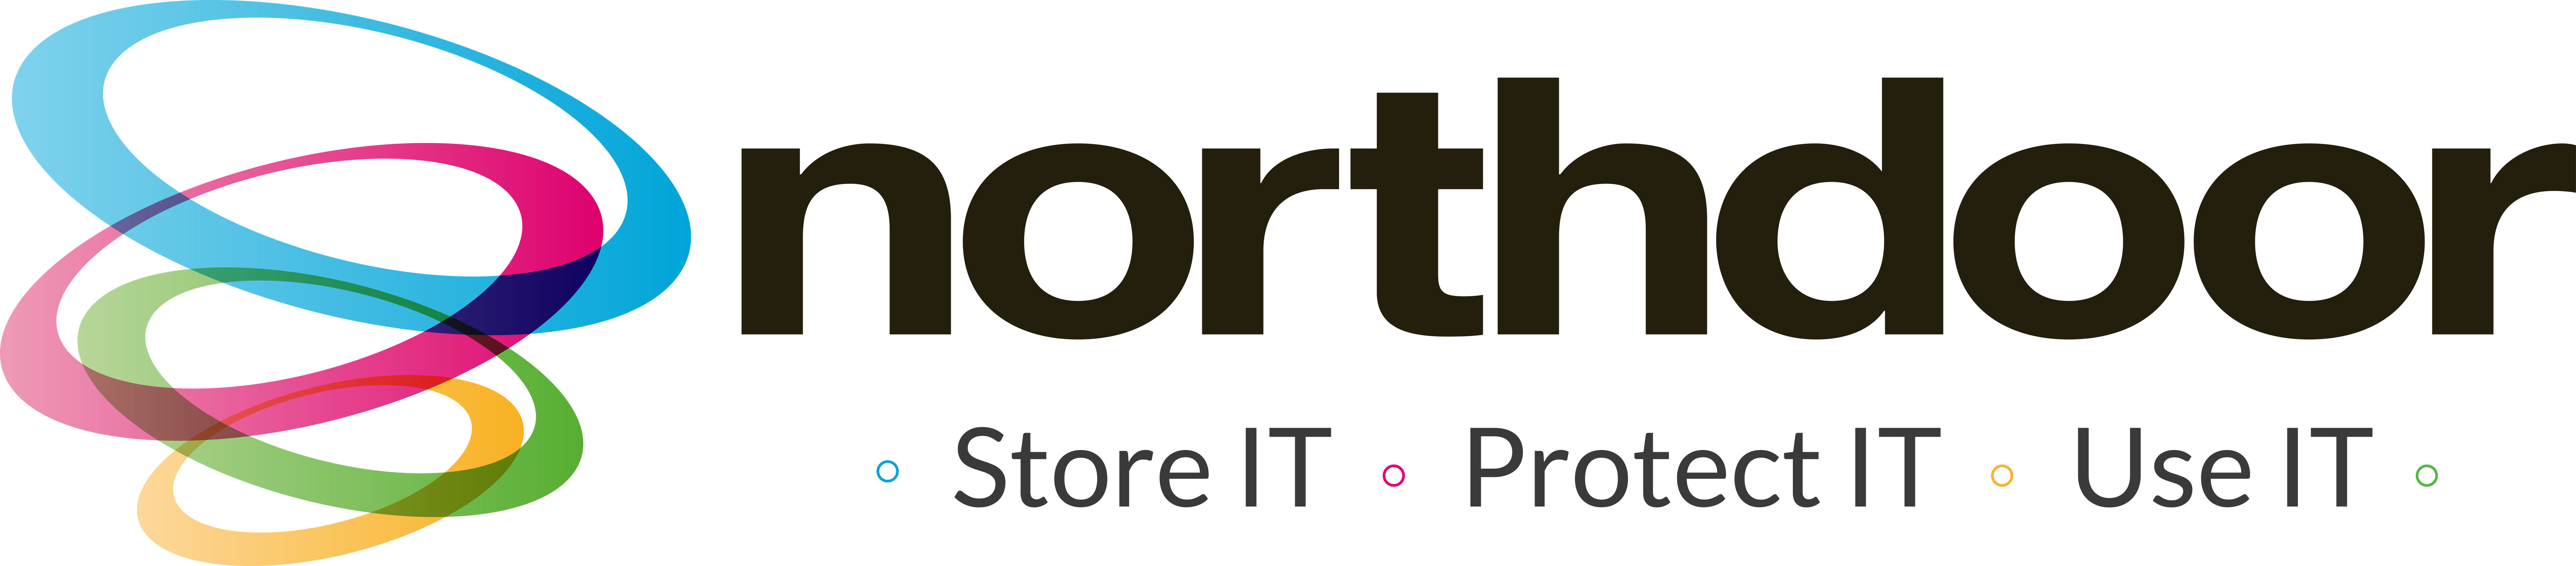 Northdoor PLC